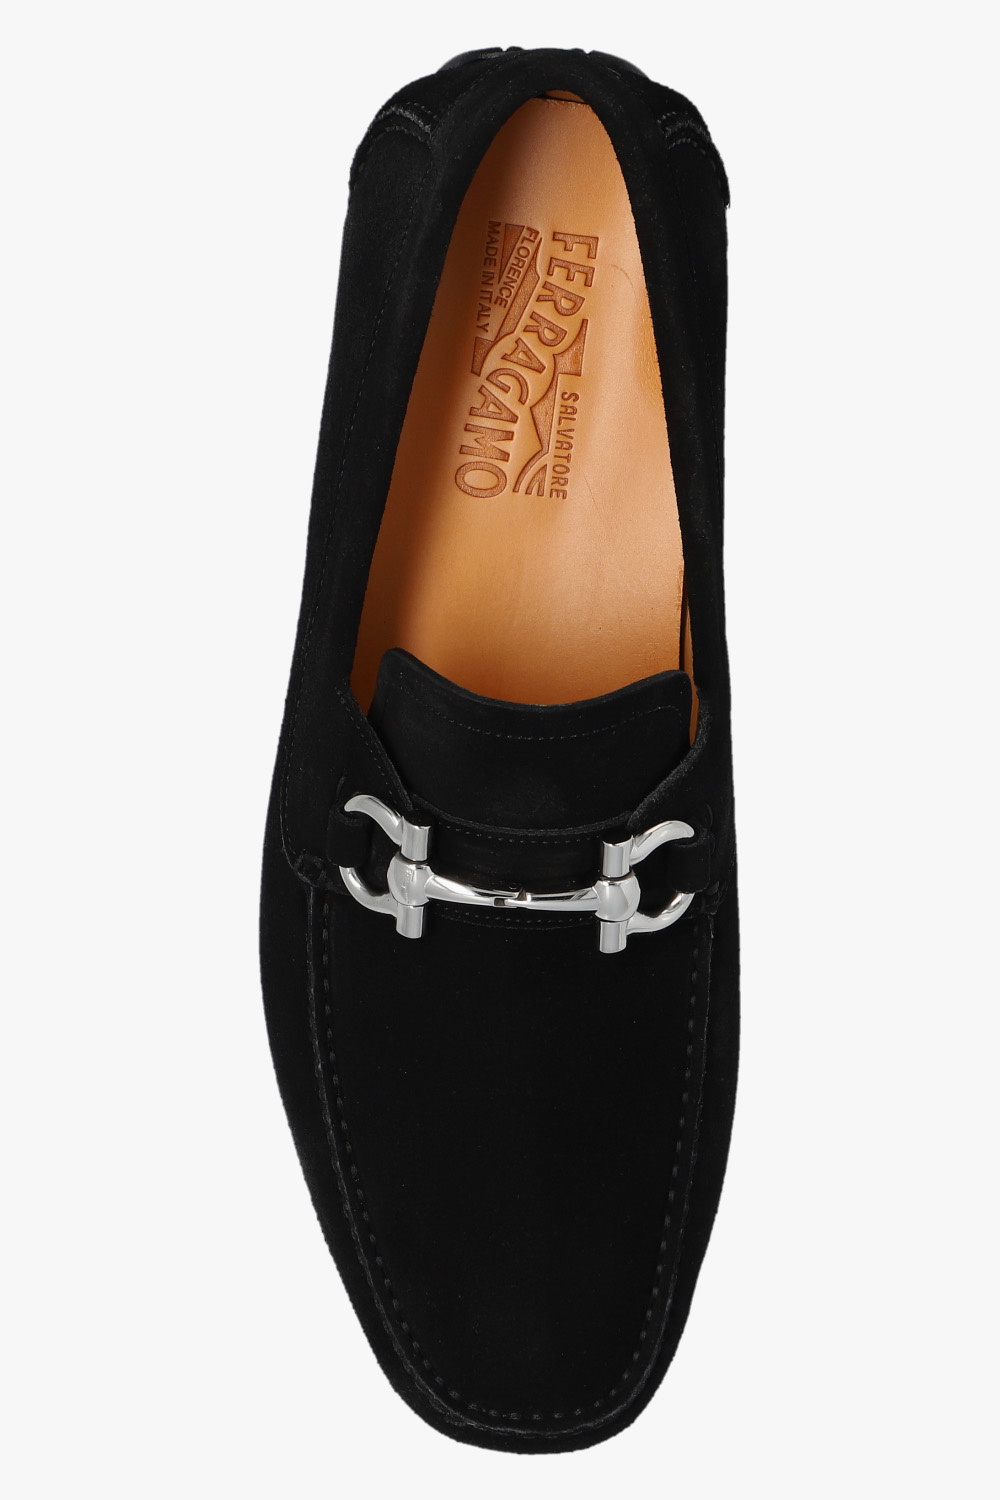 Salvatore Ferragamo ‘Parigi’ leather shoes